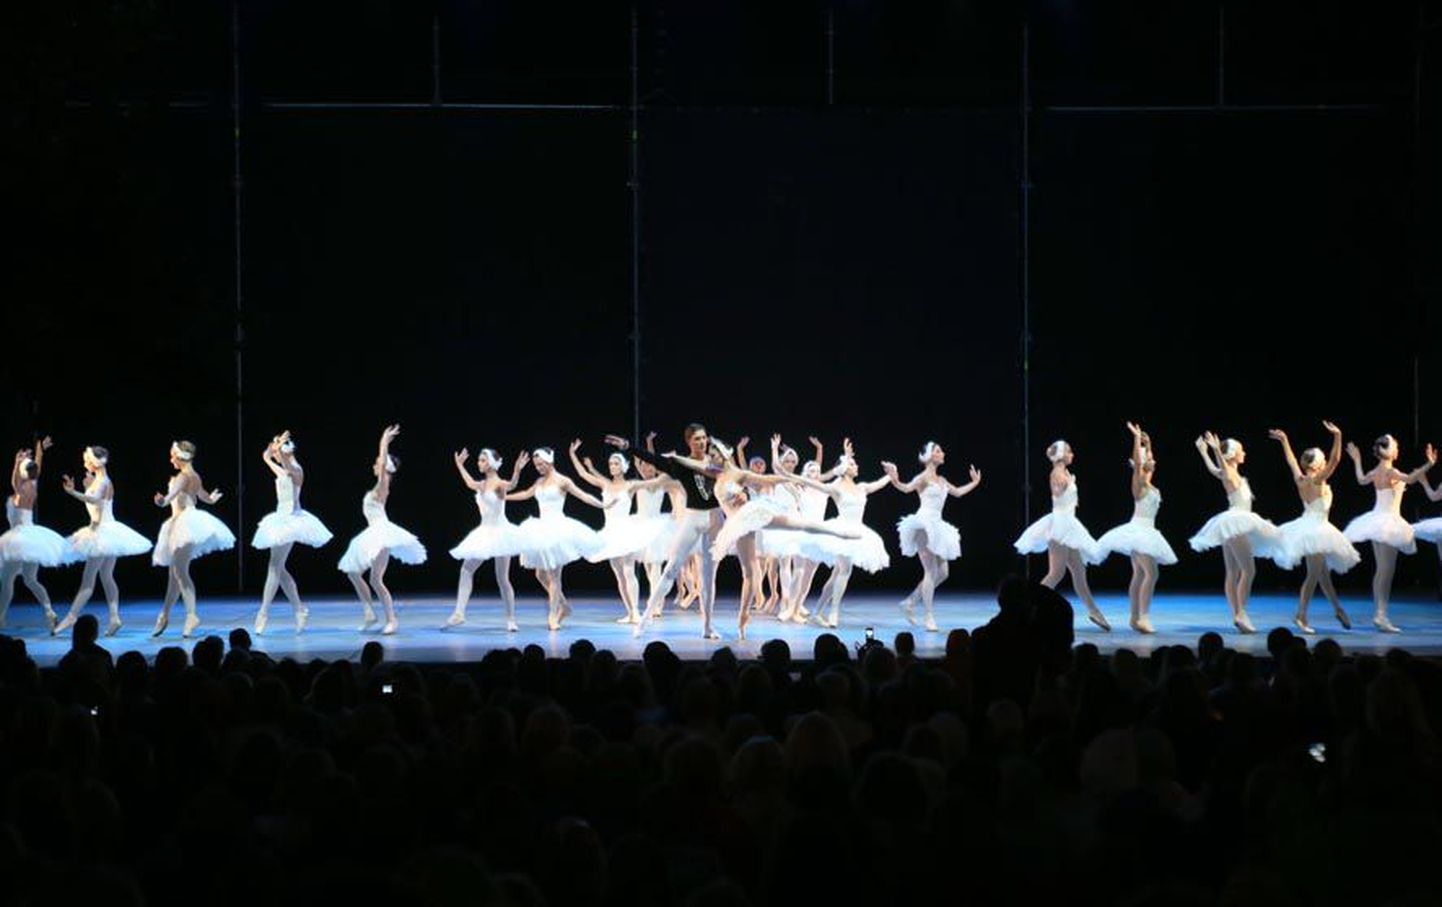 Rahvusballett koos Läti Rahvusballetiga etendasid Estonia välilaval balletiklassika «Luikede järve» selliselt, et korraga viibis laval 100 luike.